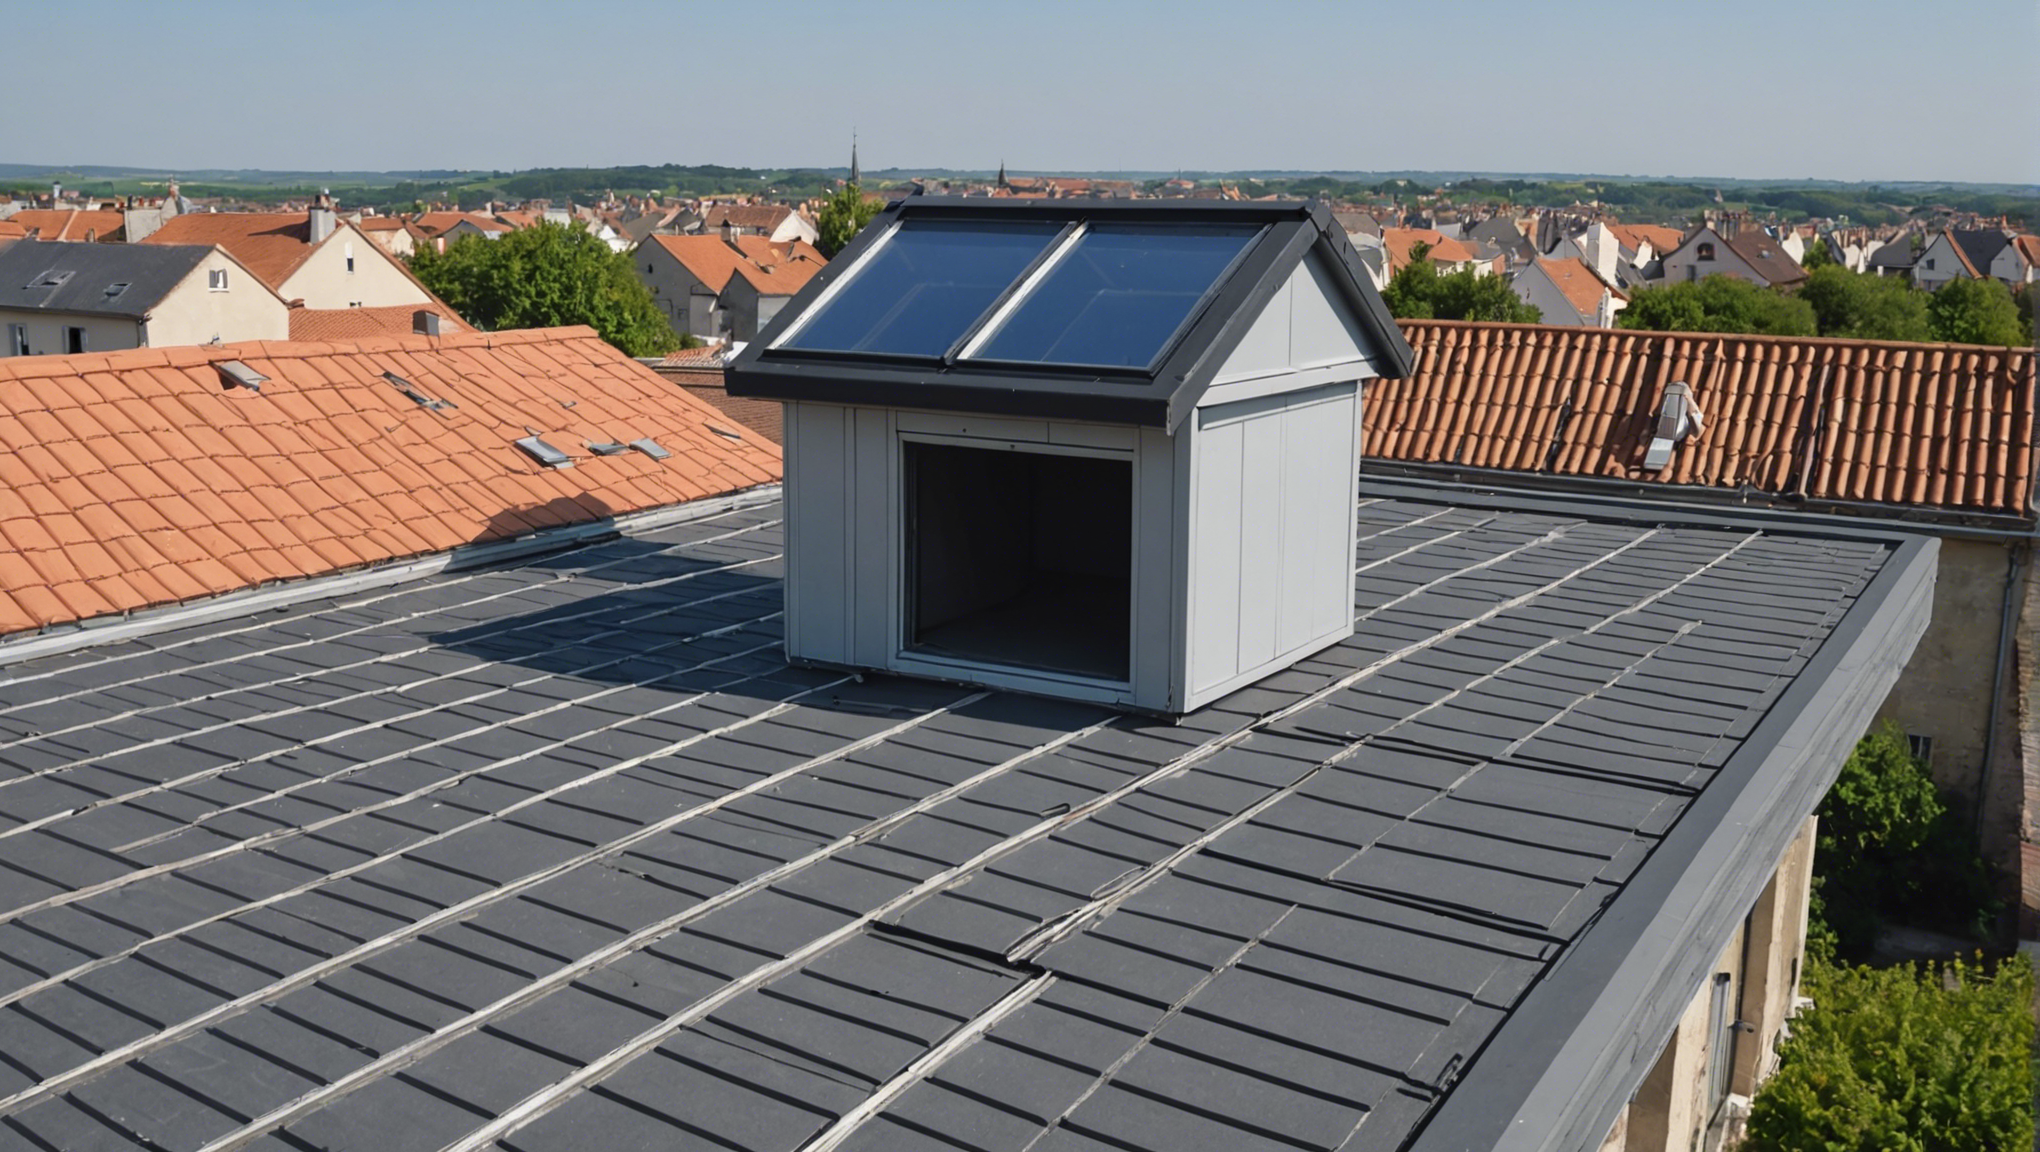 découvrez les meilleures méthodes pour réussir l'isolation sous toiture et améliorer l'efficacité énergétique de votre habitation. conseils pratiques, matériaux adaptés et techniques efficaces.